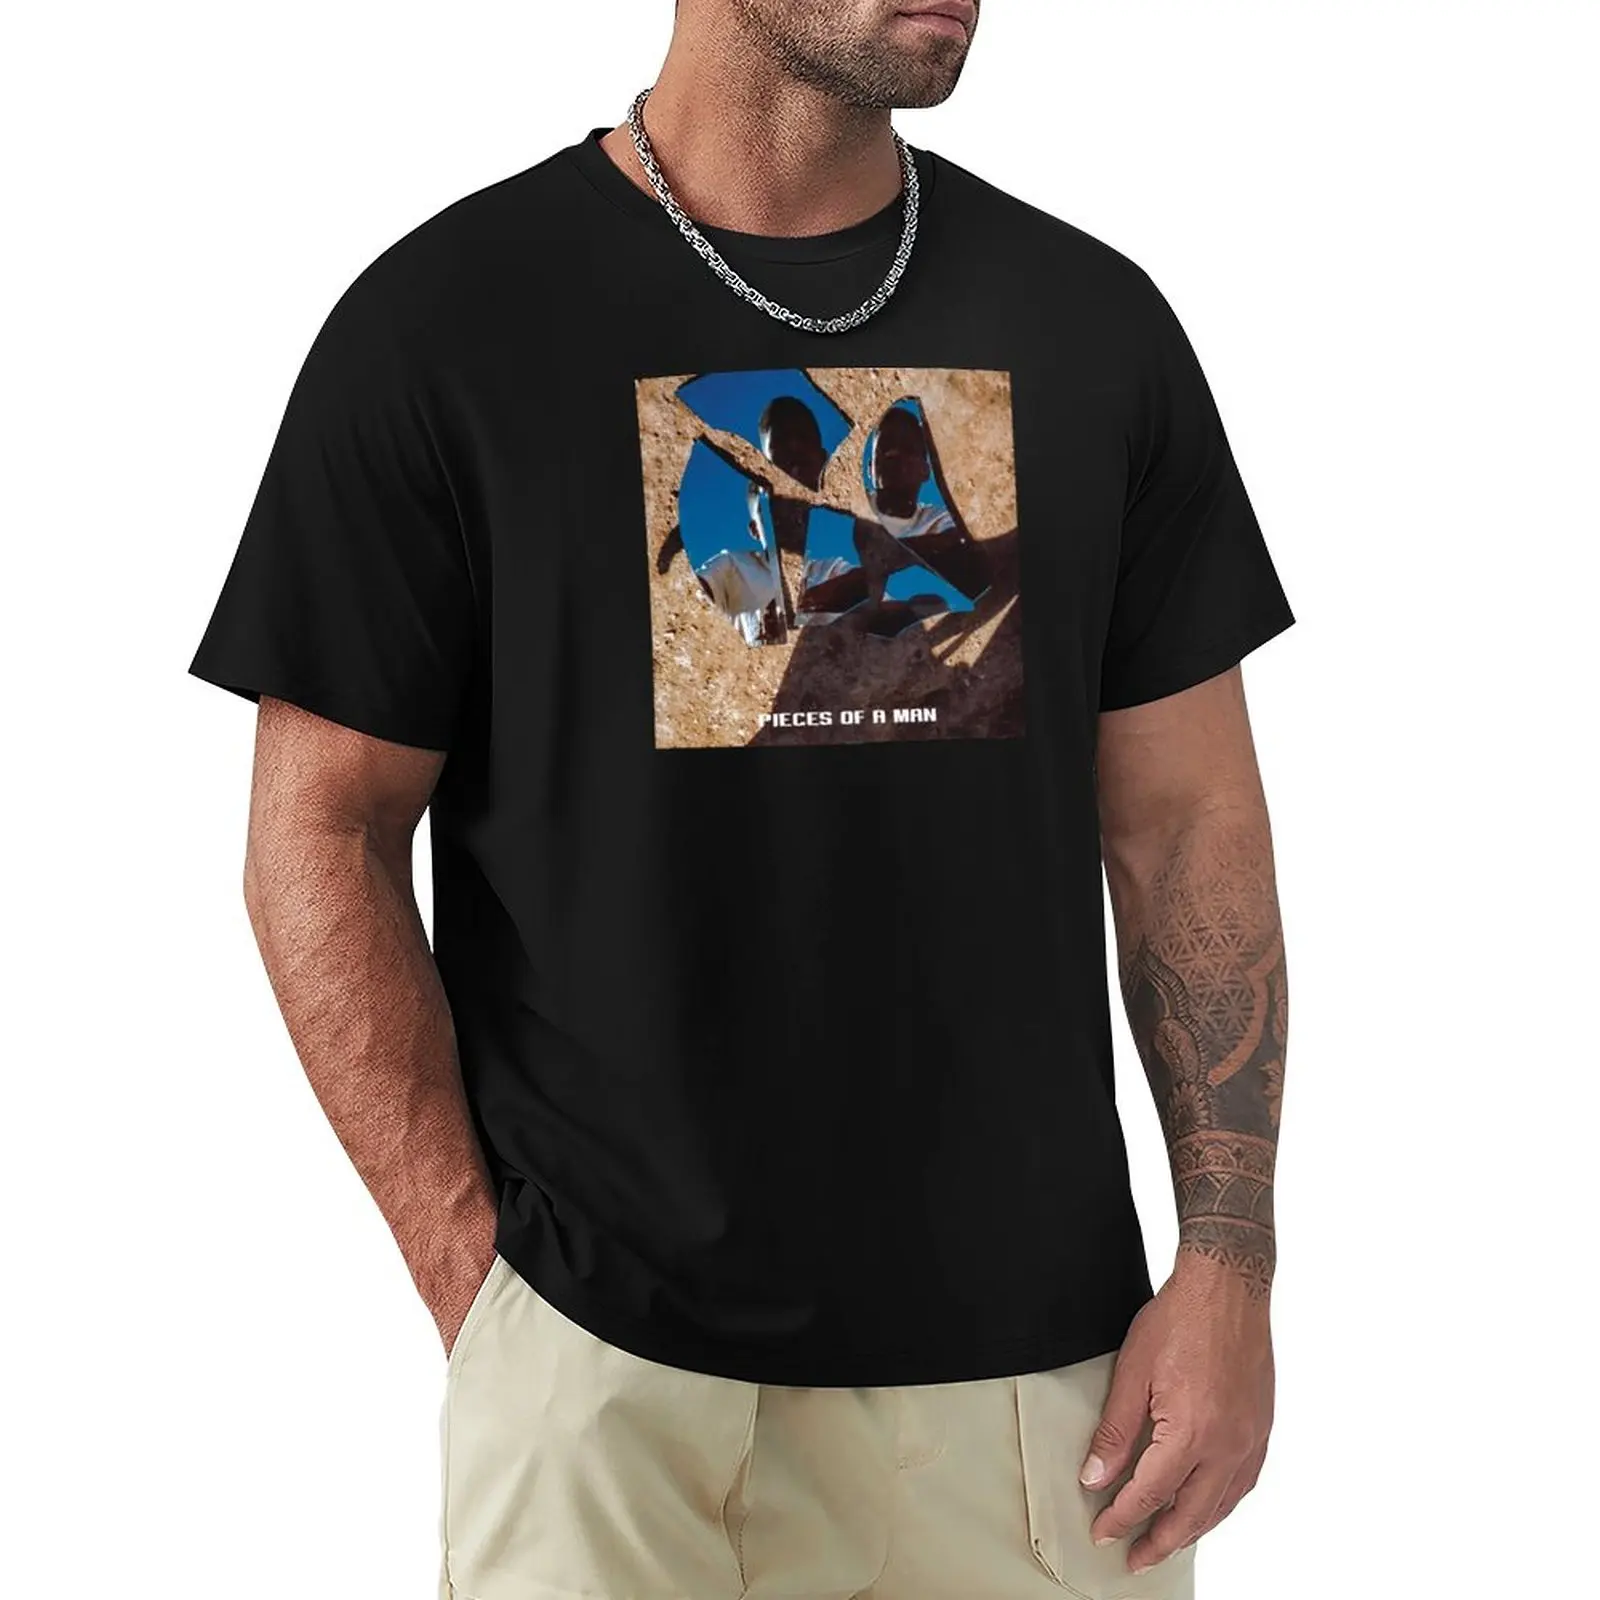 Piece of a Man Тениска на Мик Дженкинс плюс размер тениски обикновена тениска извънгабаритни тениски за мъже